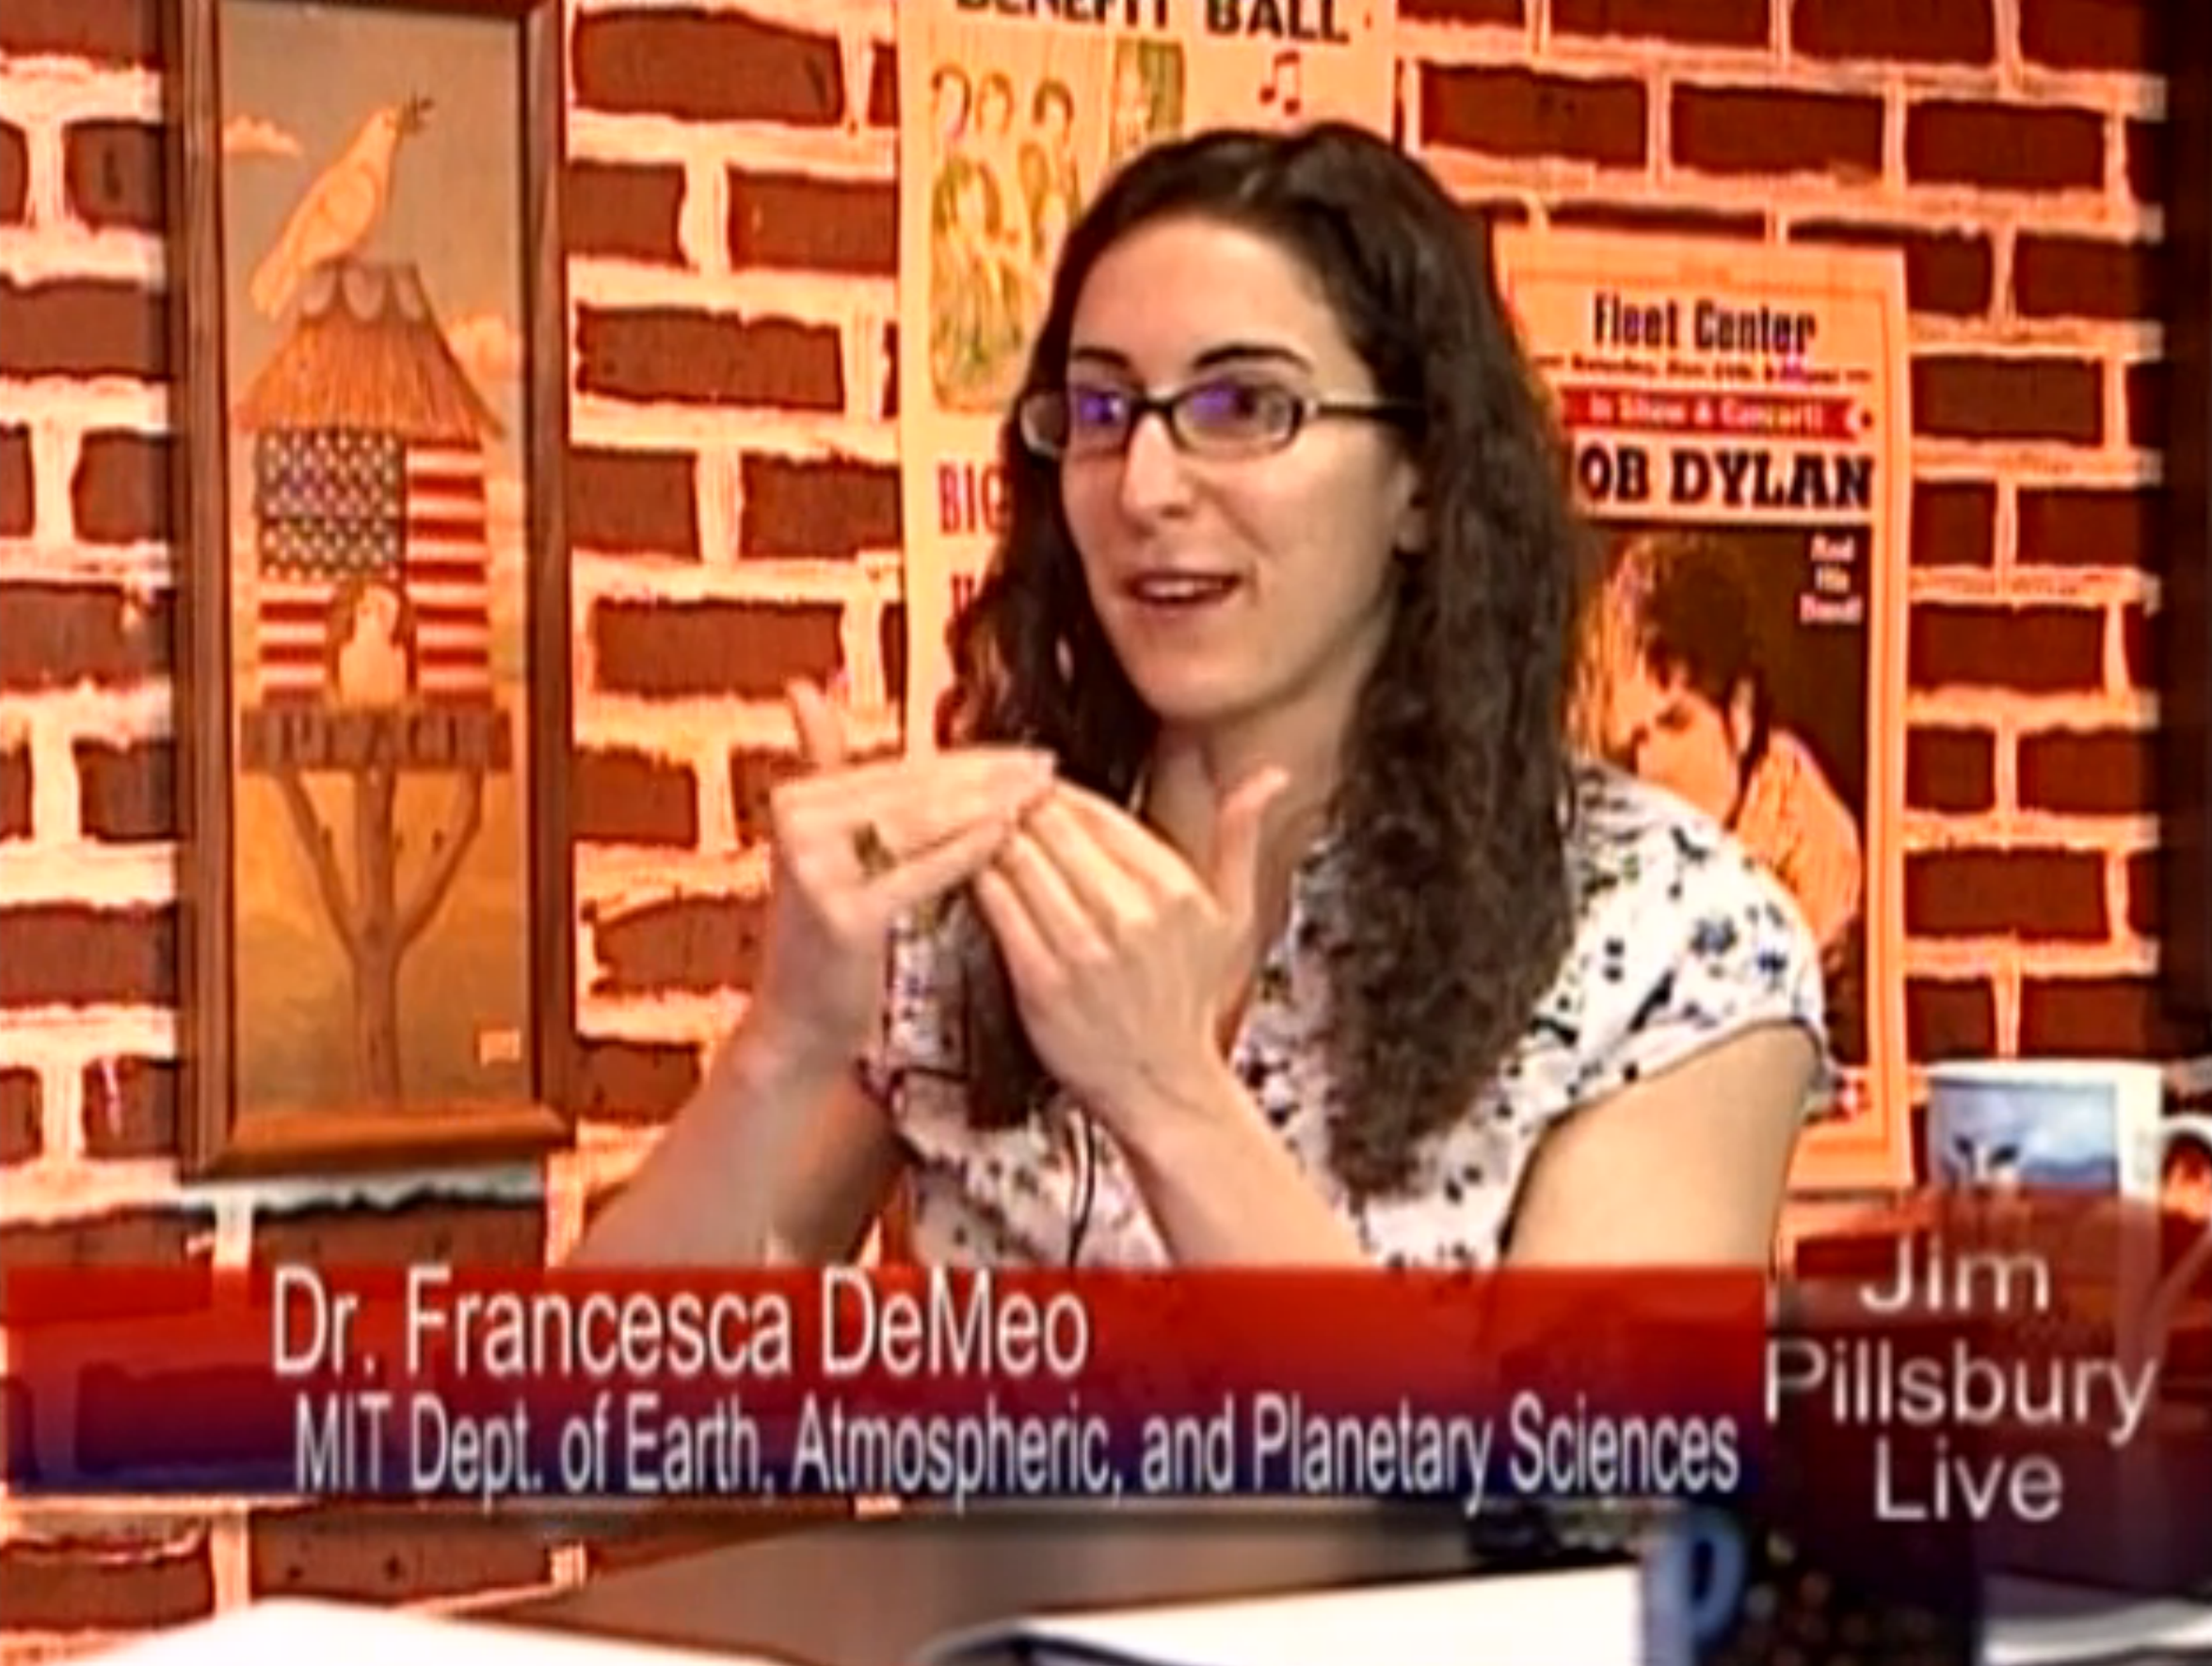 Dr. Francesca DeMeo